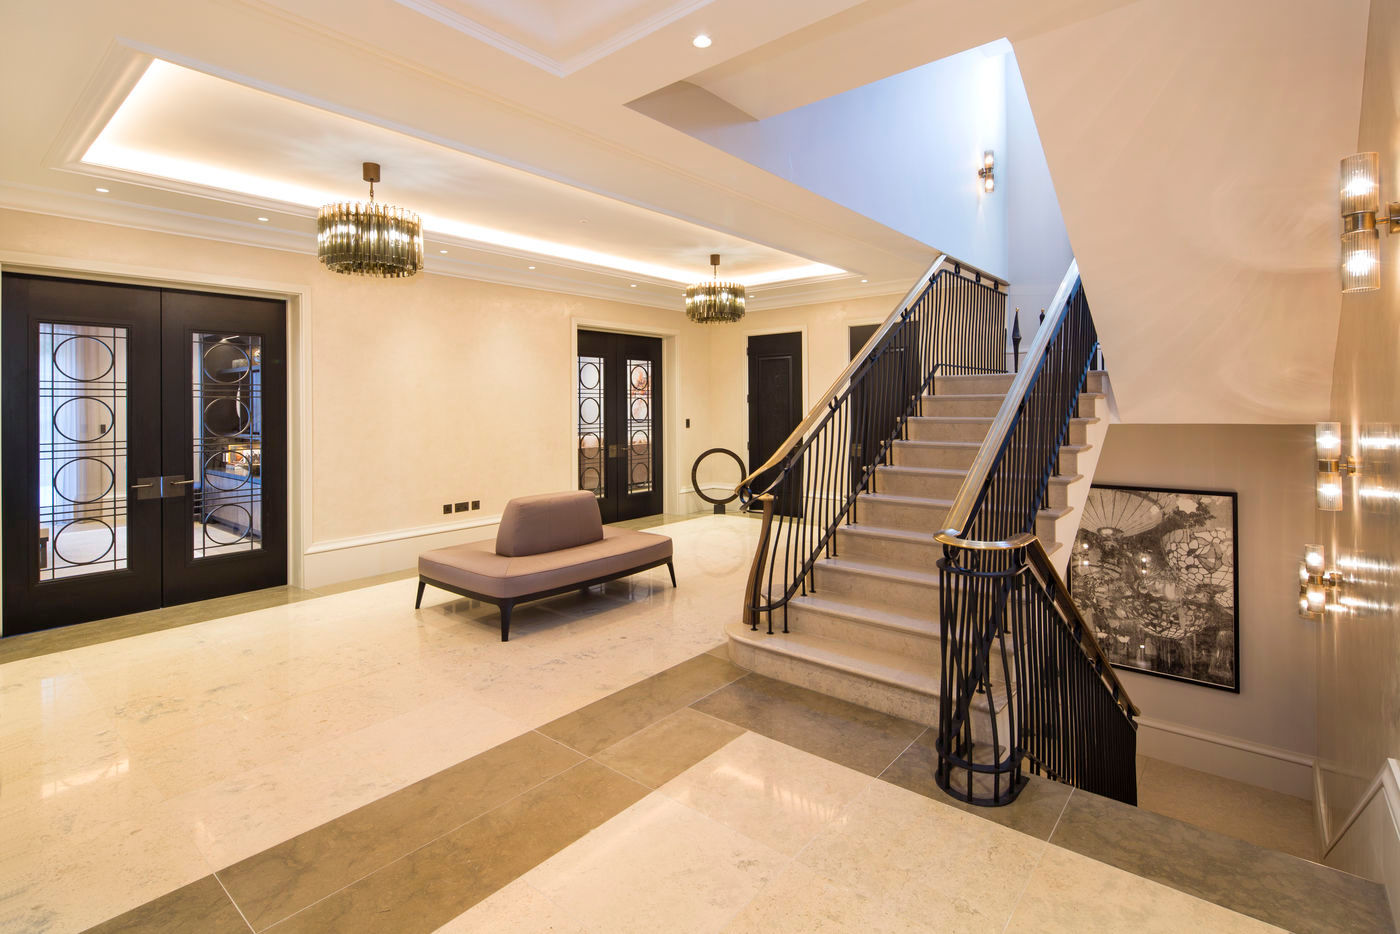 Hallway KSR Architects Pasillos, vestíbulos y escaleras clásicas Caliza Hallway,spiral staircase